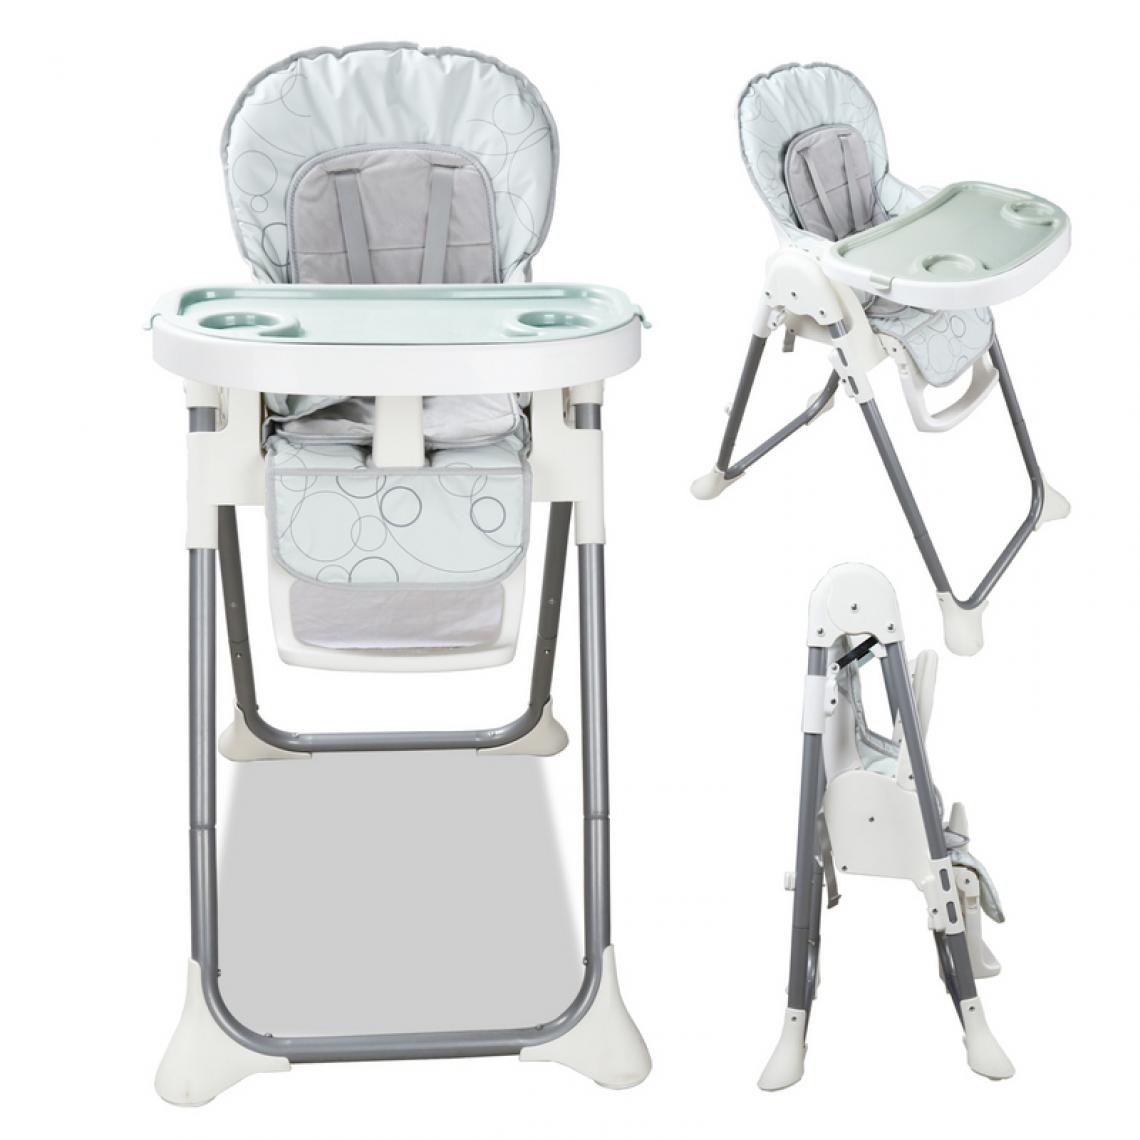 Einfeben - chaise haute chaise bébé chaise réglable pliante salle à manger groupe de sièges pour enfants chaise haute - Chaises